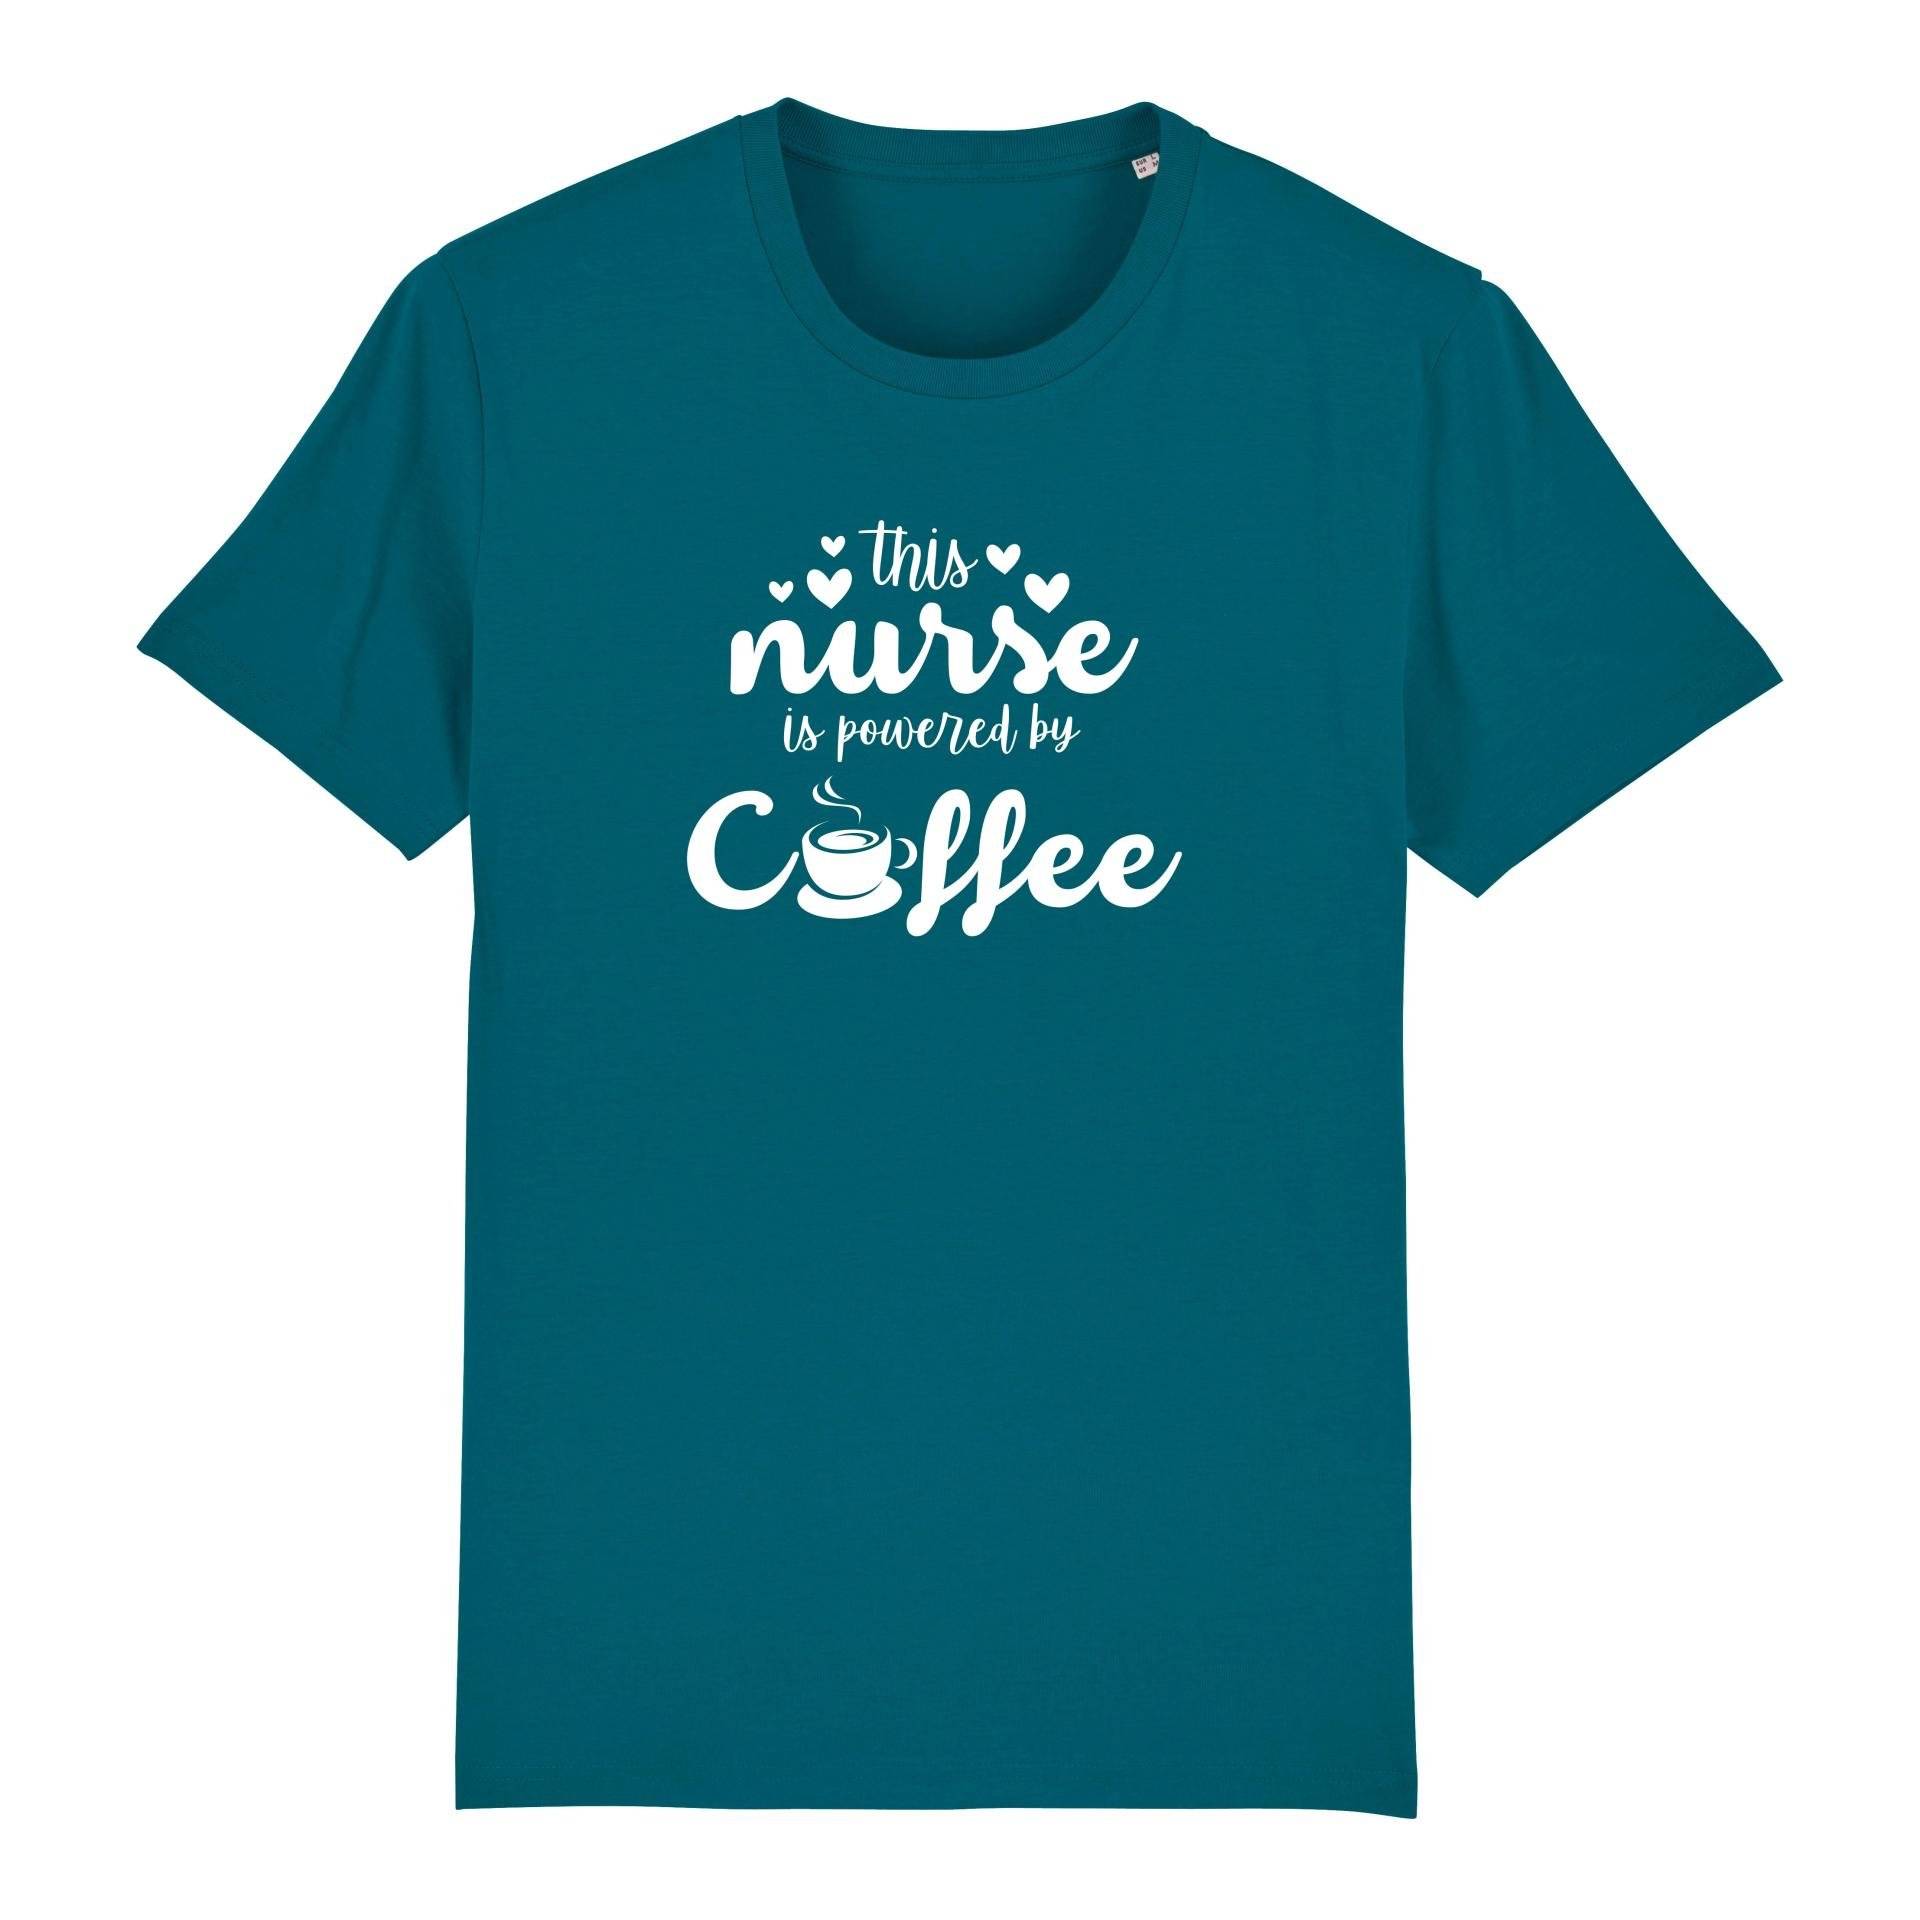 Schwesternuhr This nurse is powered by coffee Bio T-Shirt Unisex von Schwesternuhr